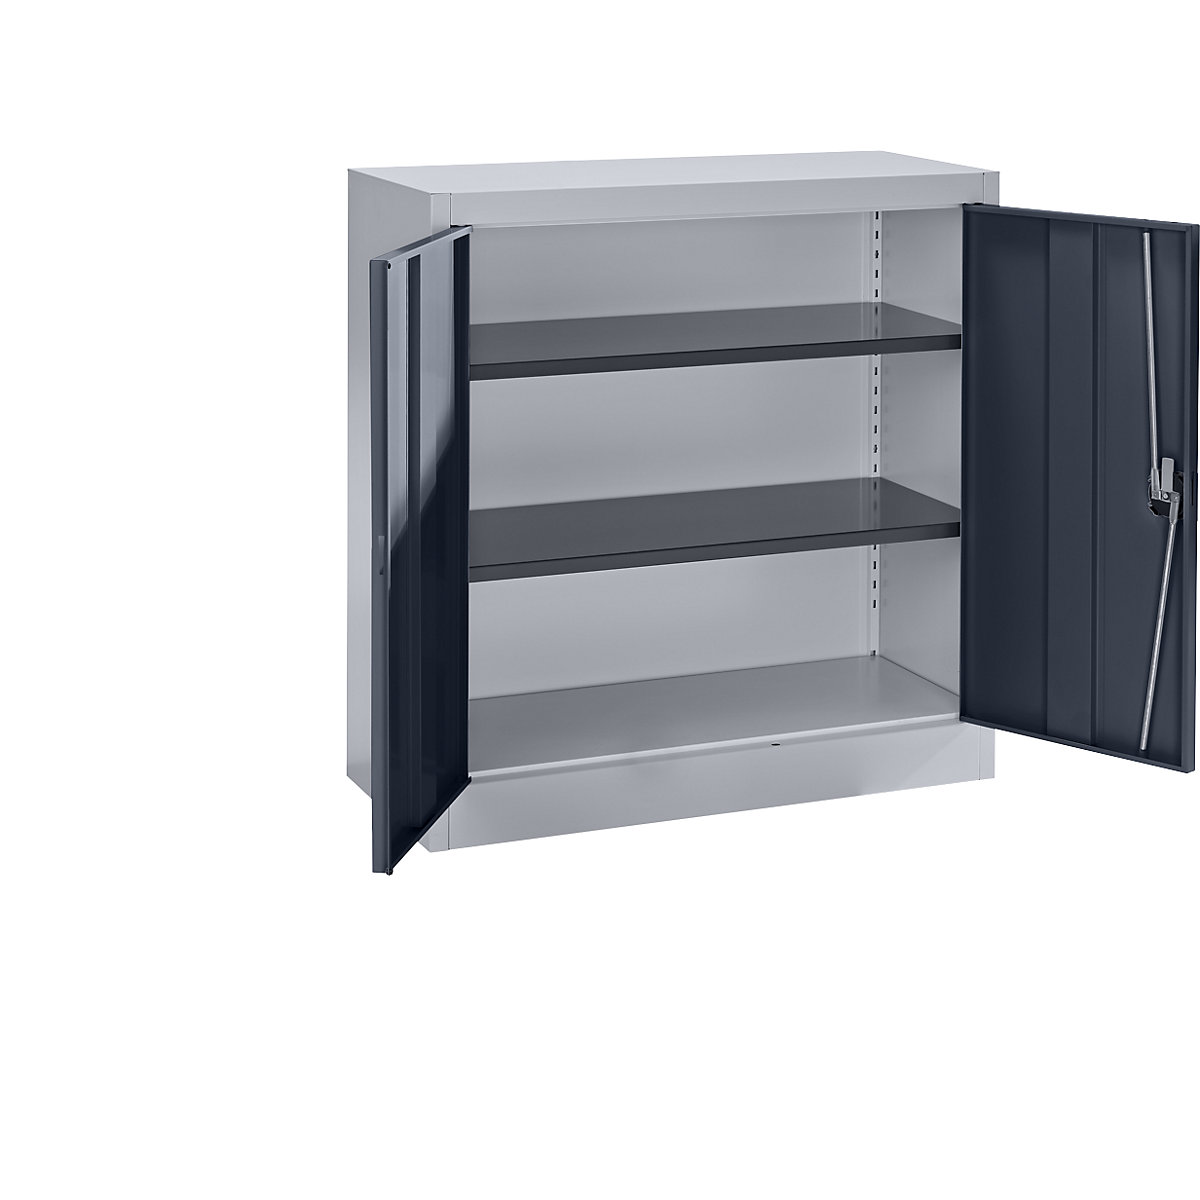 Ocelová skříň s otočnými dveřmi – mauser, 2 police, výška 1016 mm, bílá hliníková / antracitově šedá-7